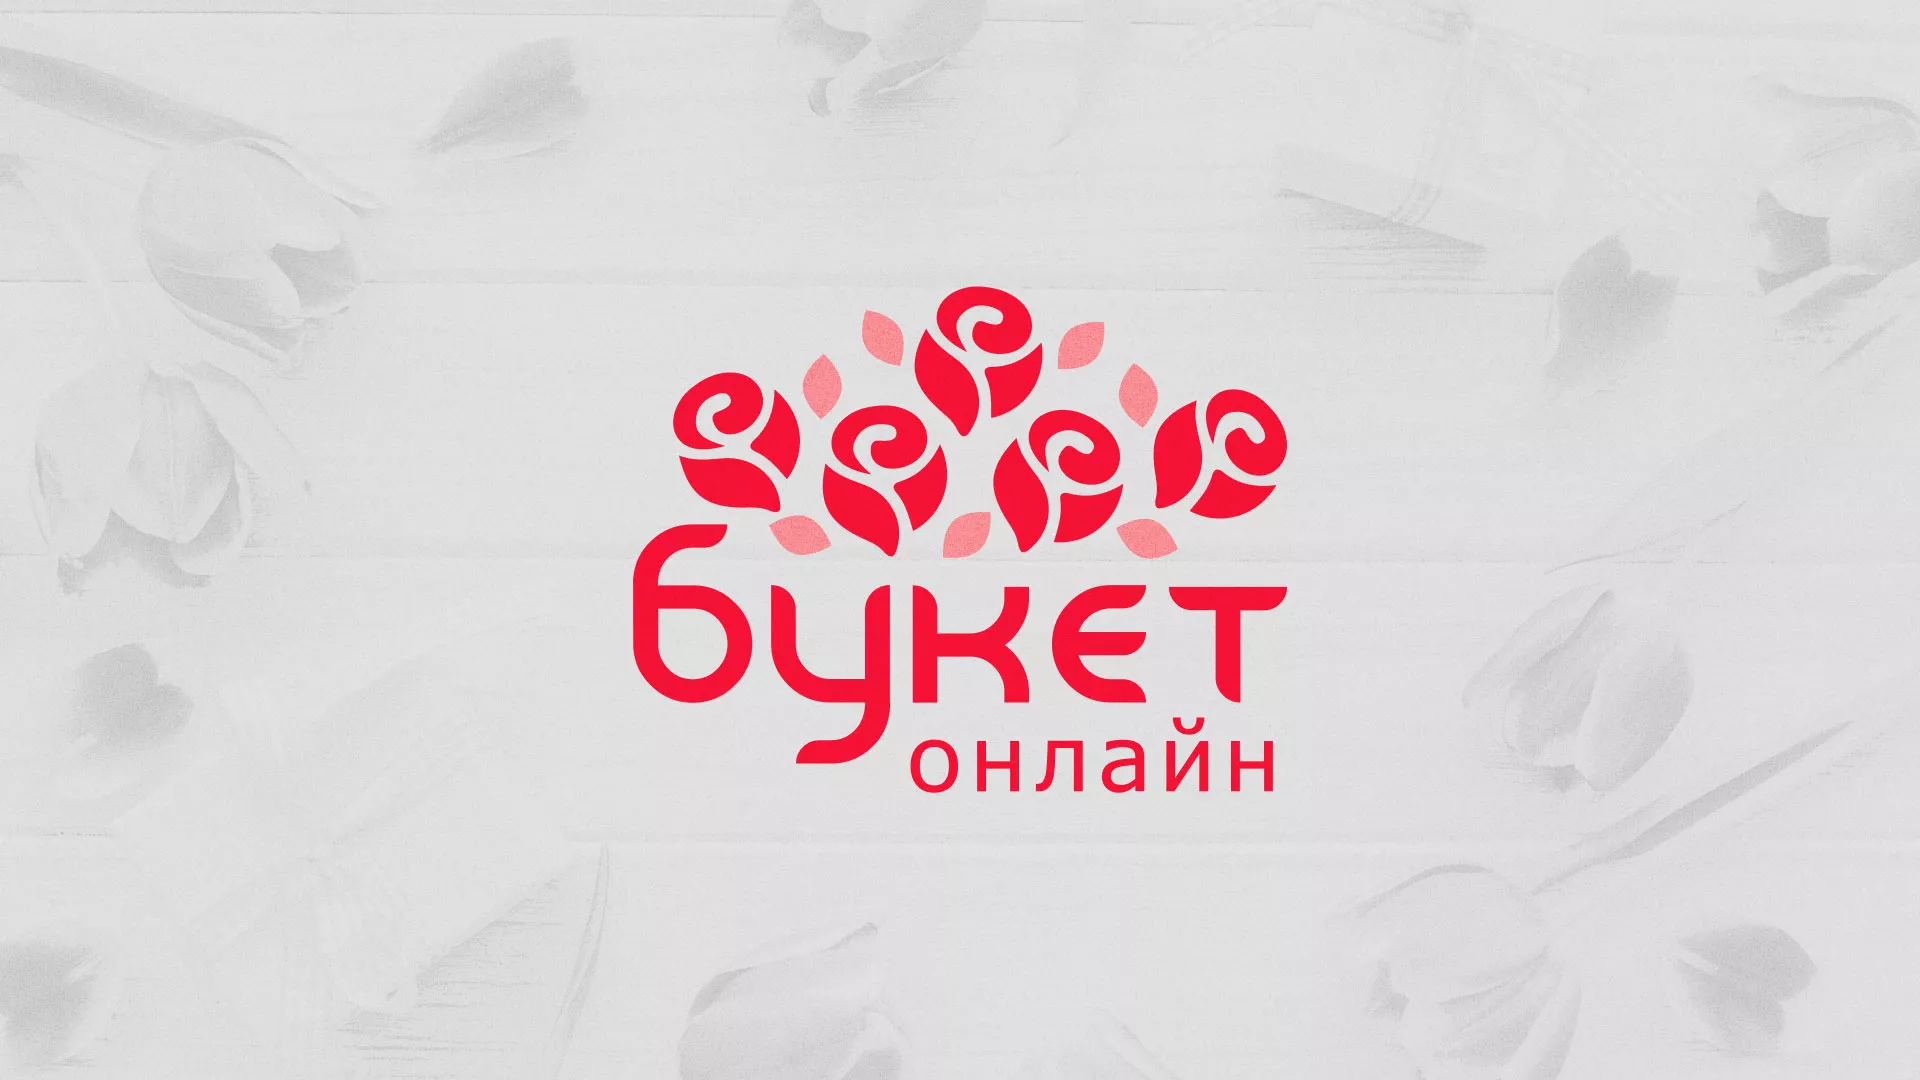 Создание интернет-магазина «Букет-онлайн» по цветам в Череповце